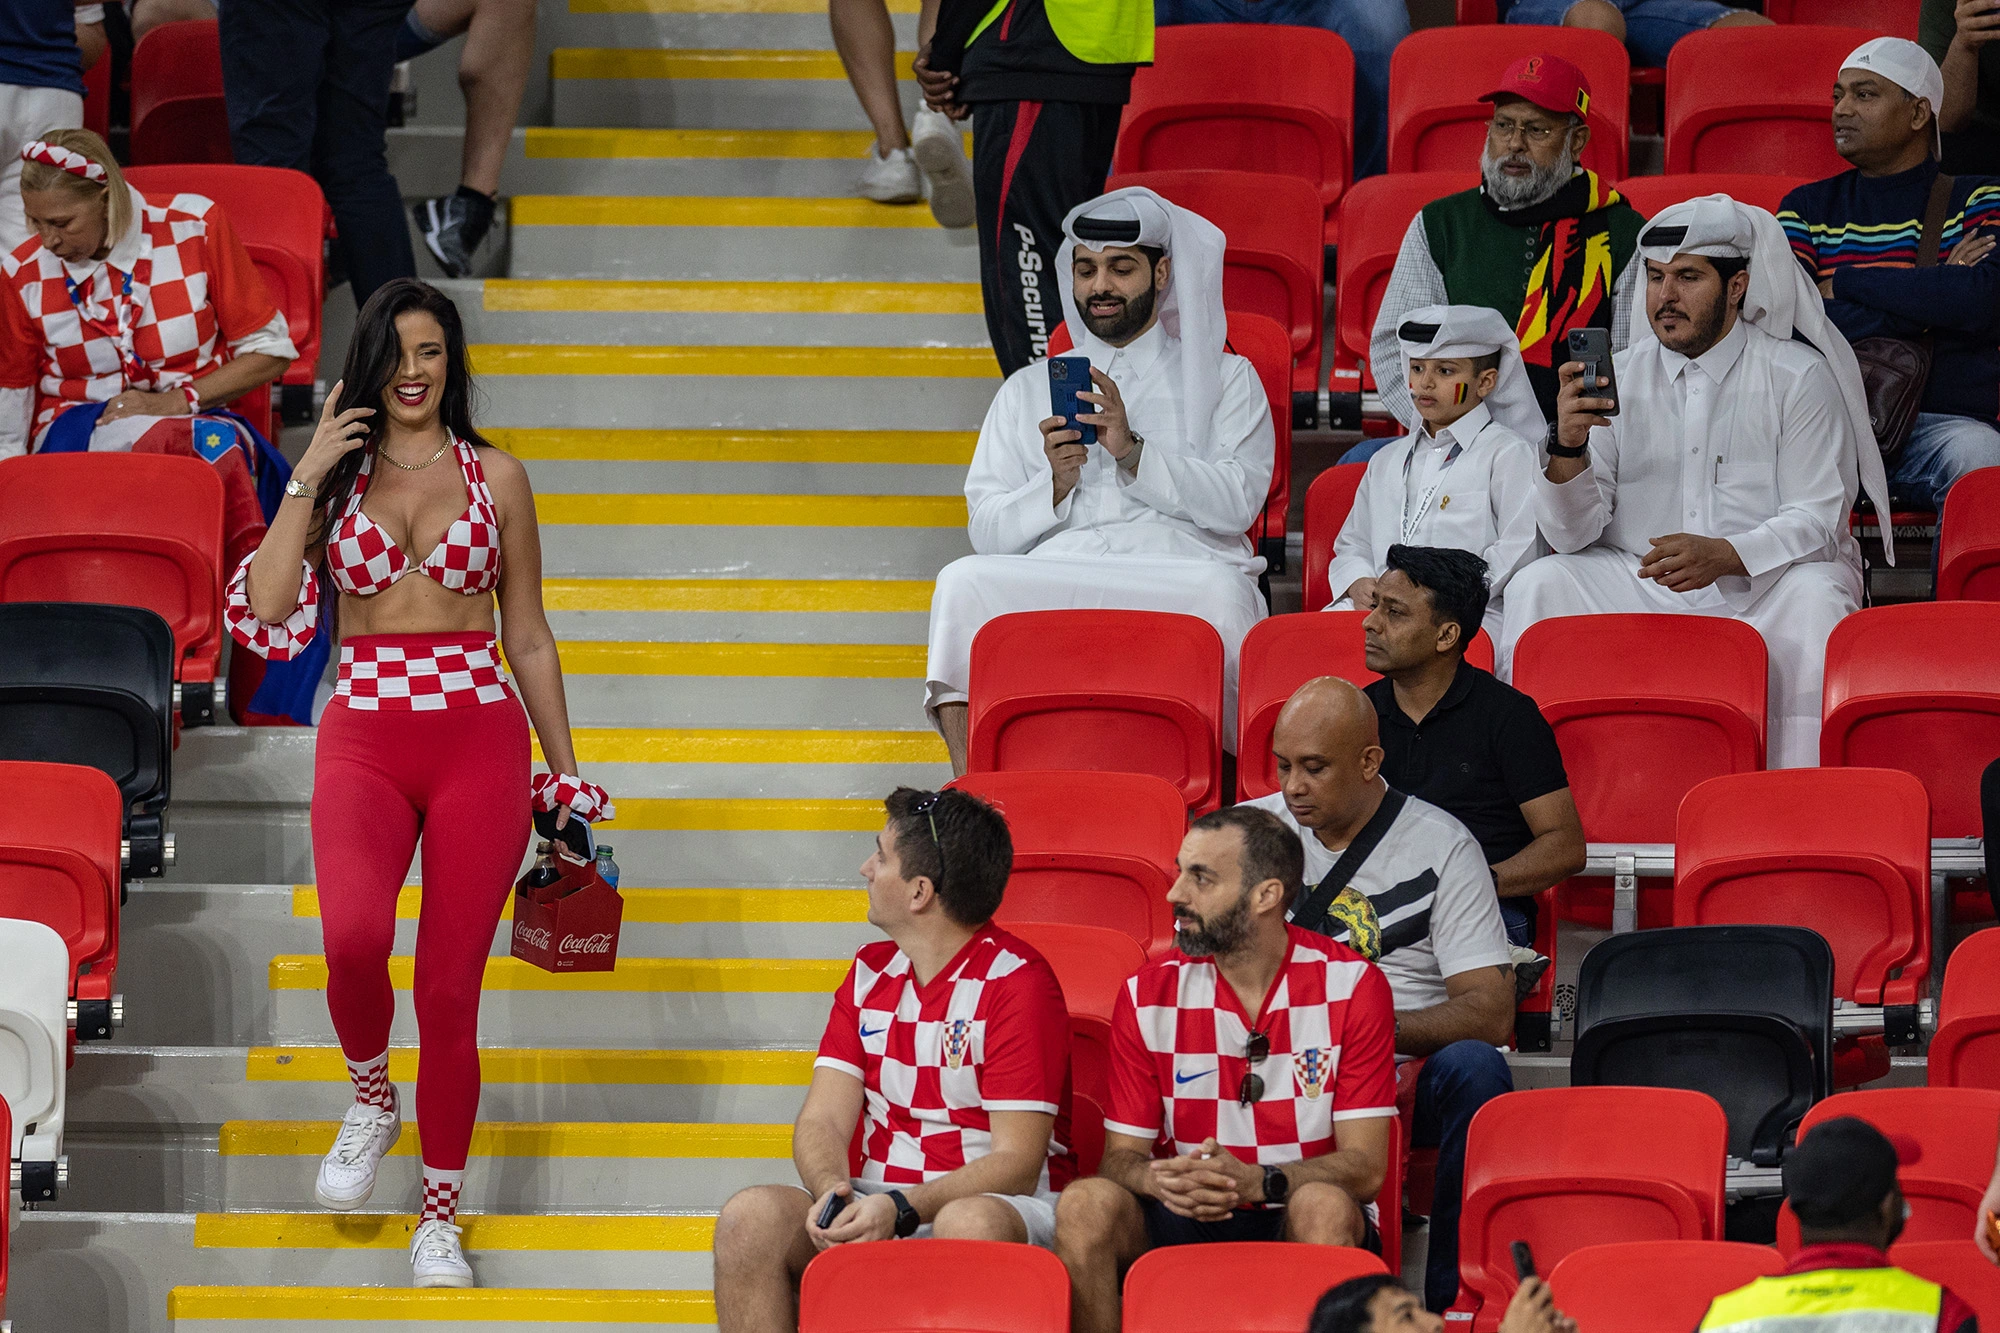 Ivana Knöll vs the Qatari dress code